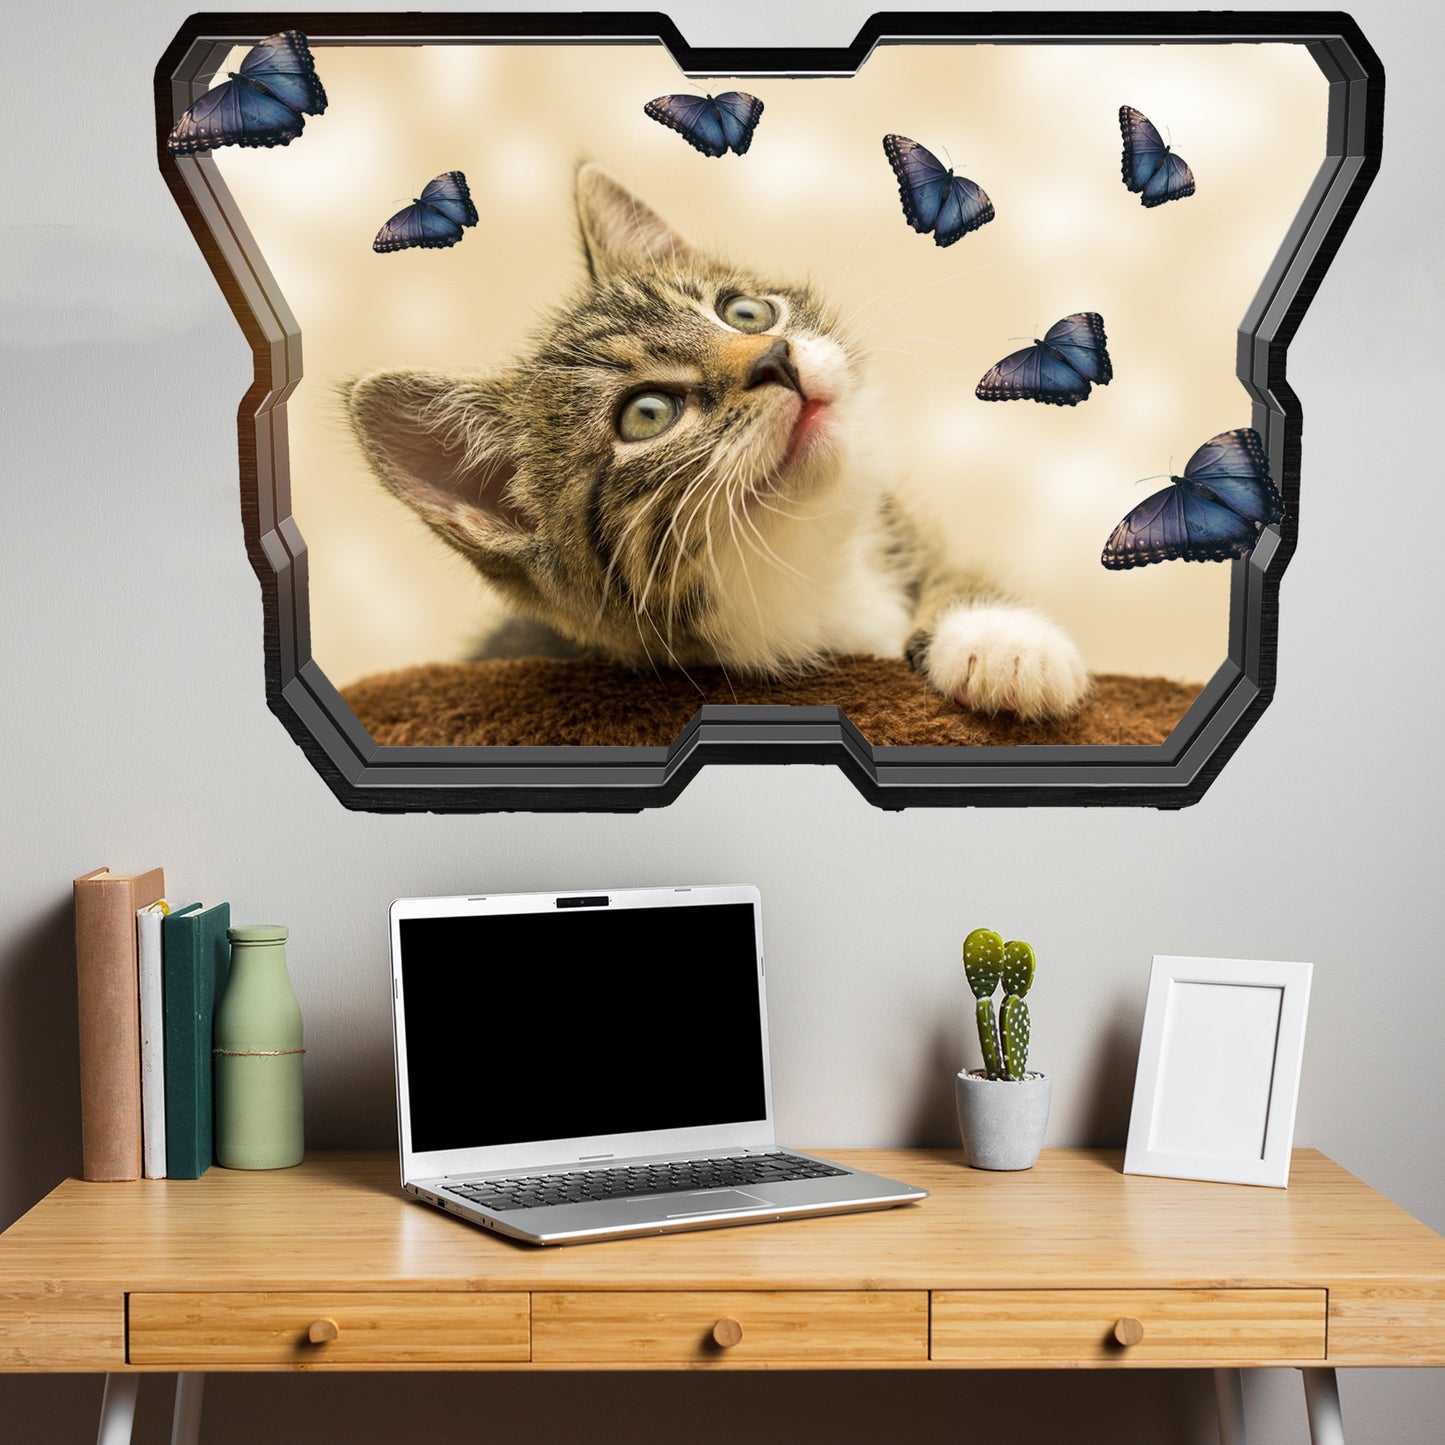 Cute Kitten and butterflies wall sticker mural decal